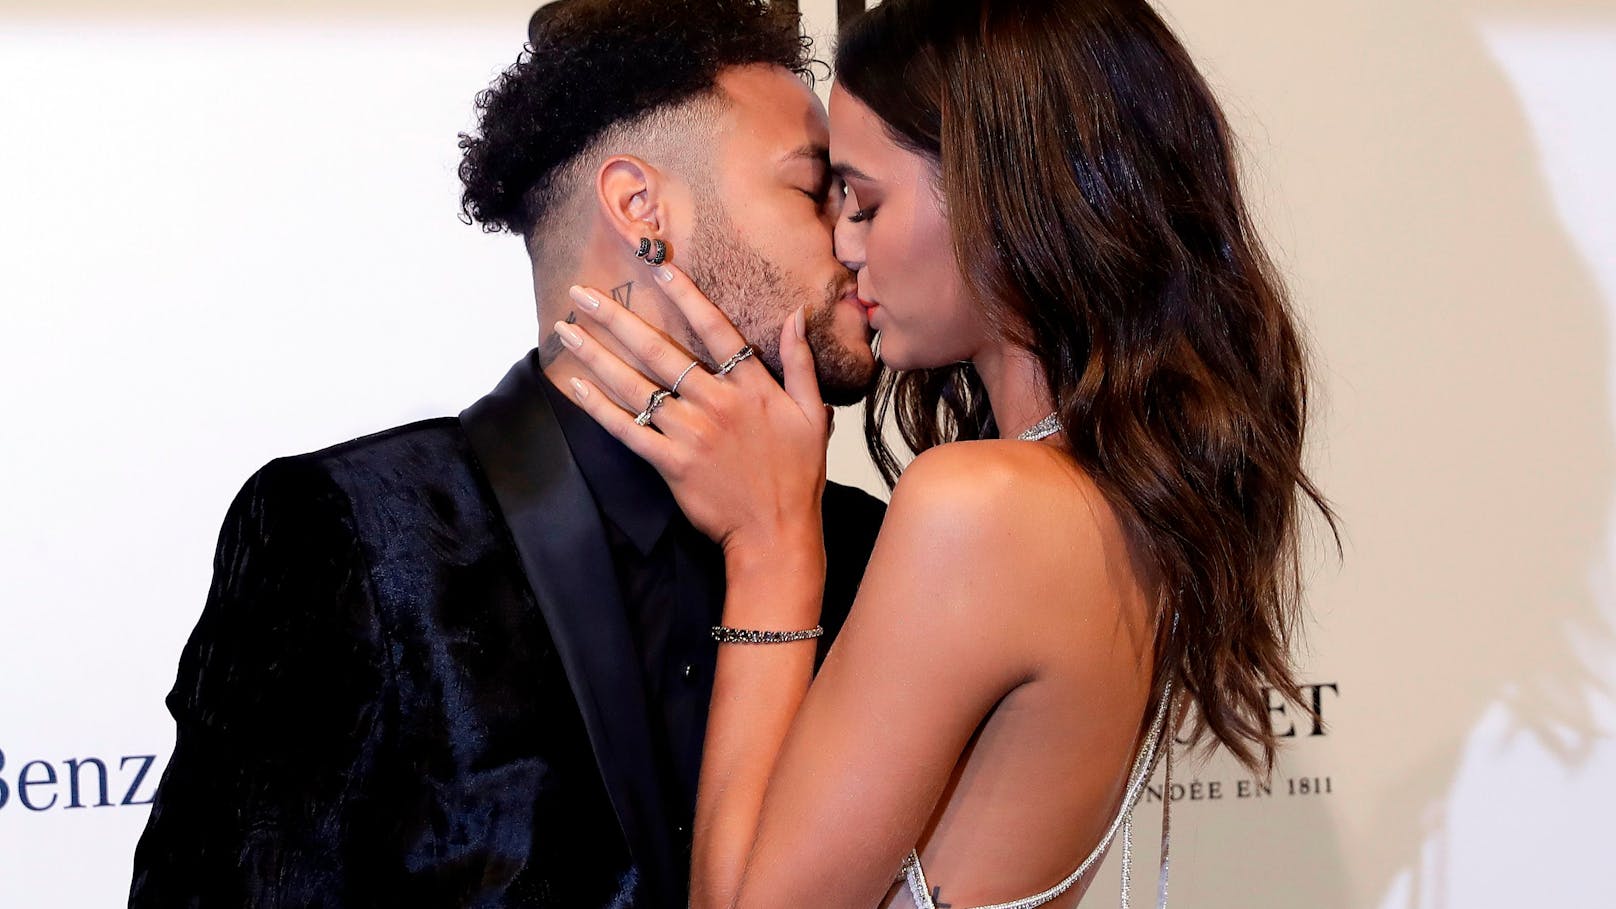 Fußball-Star Neymar gibt zu, seine schwangere Freundin betrogen zu haben